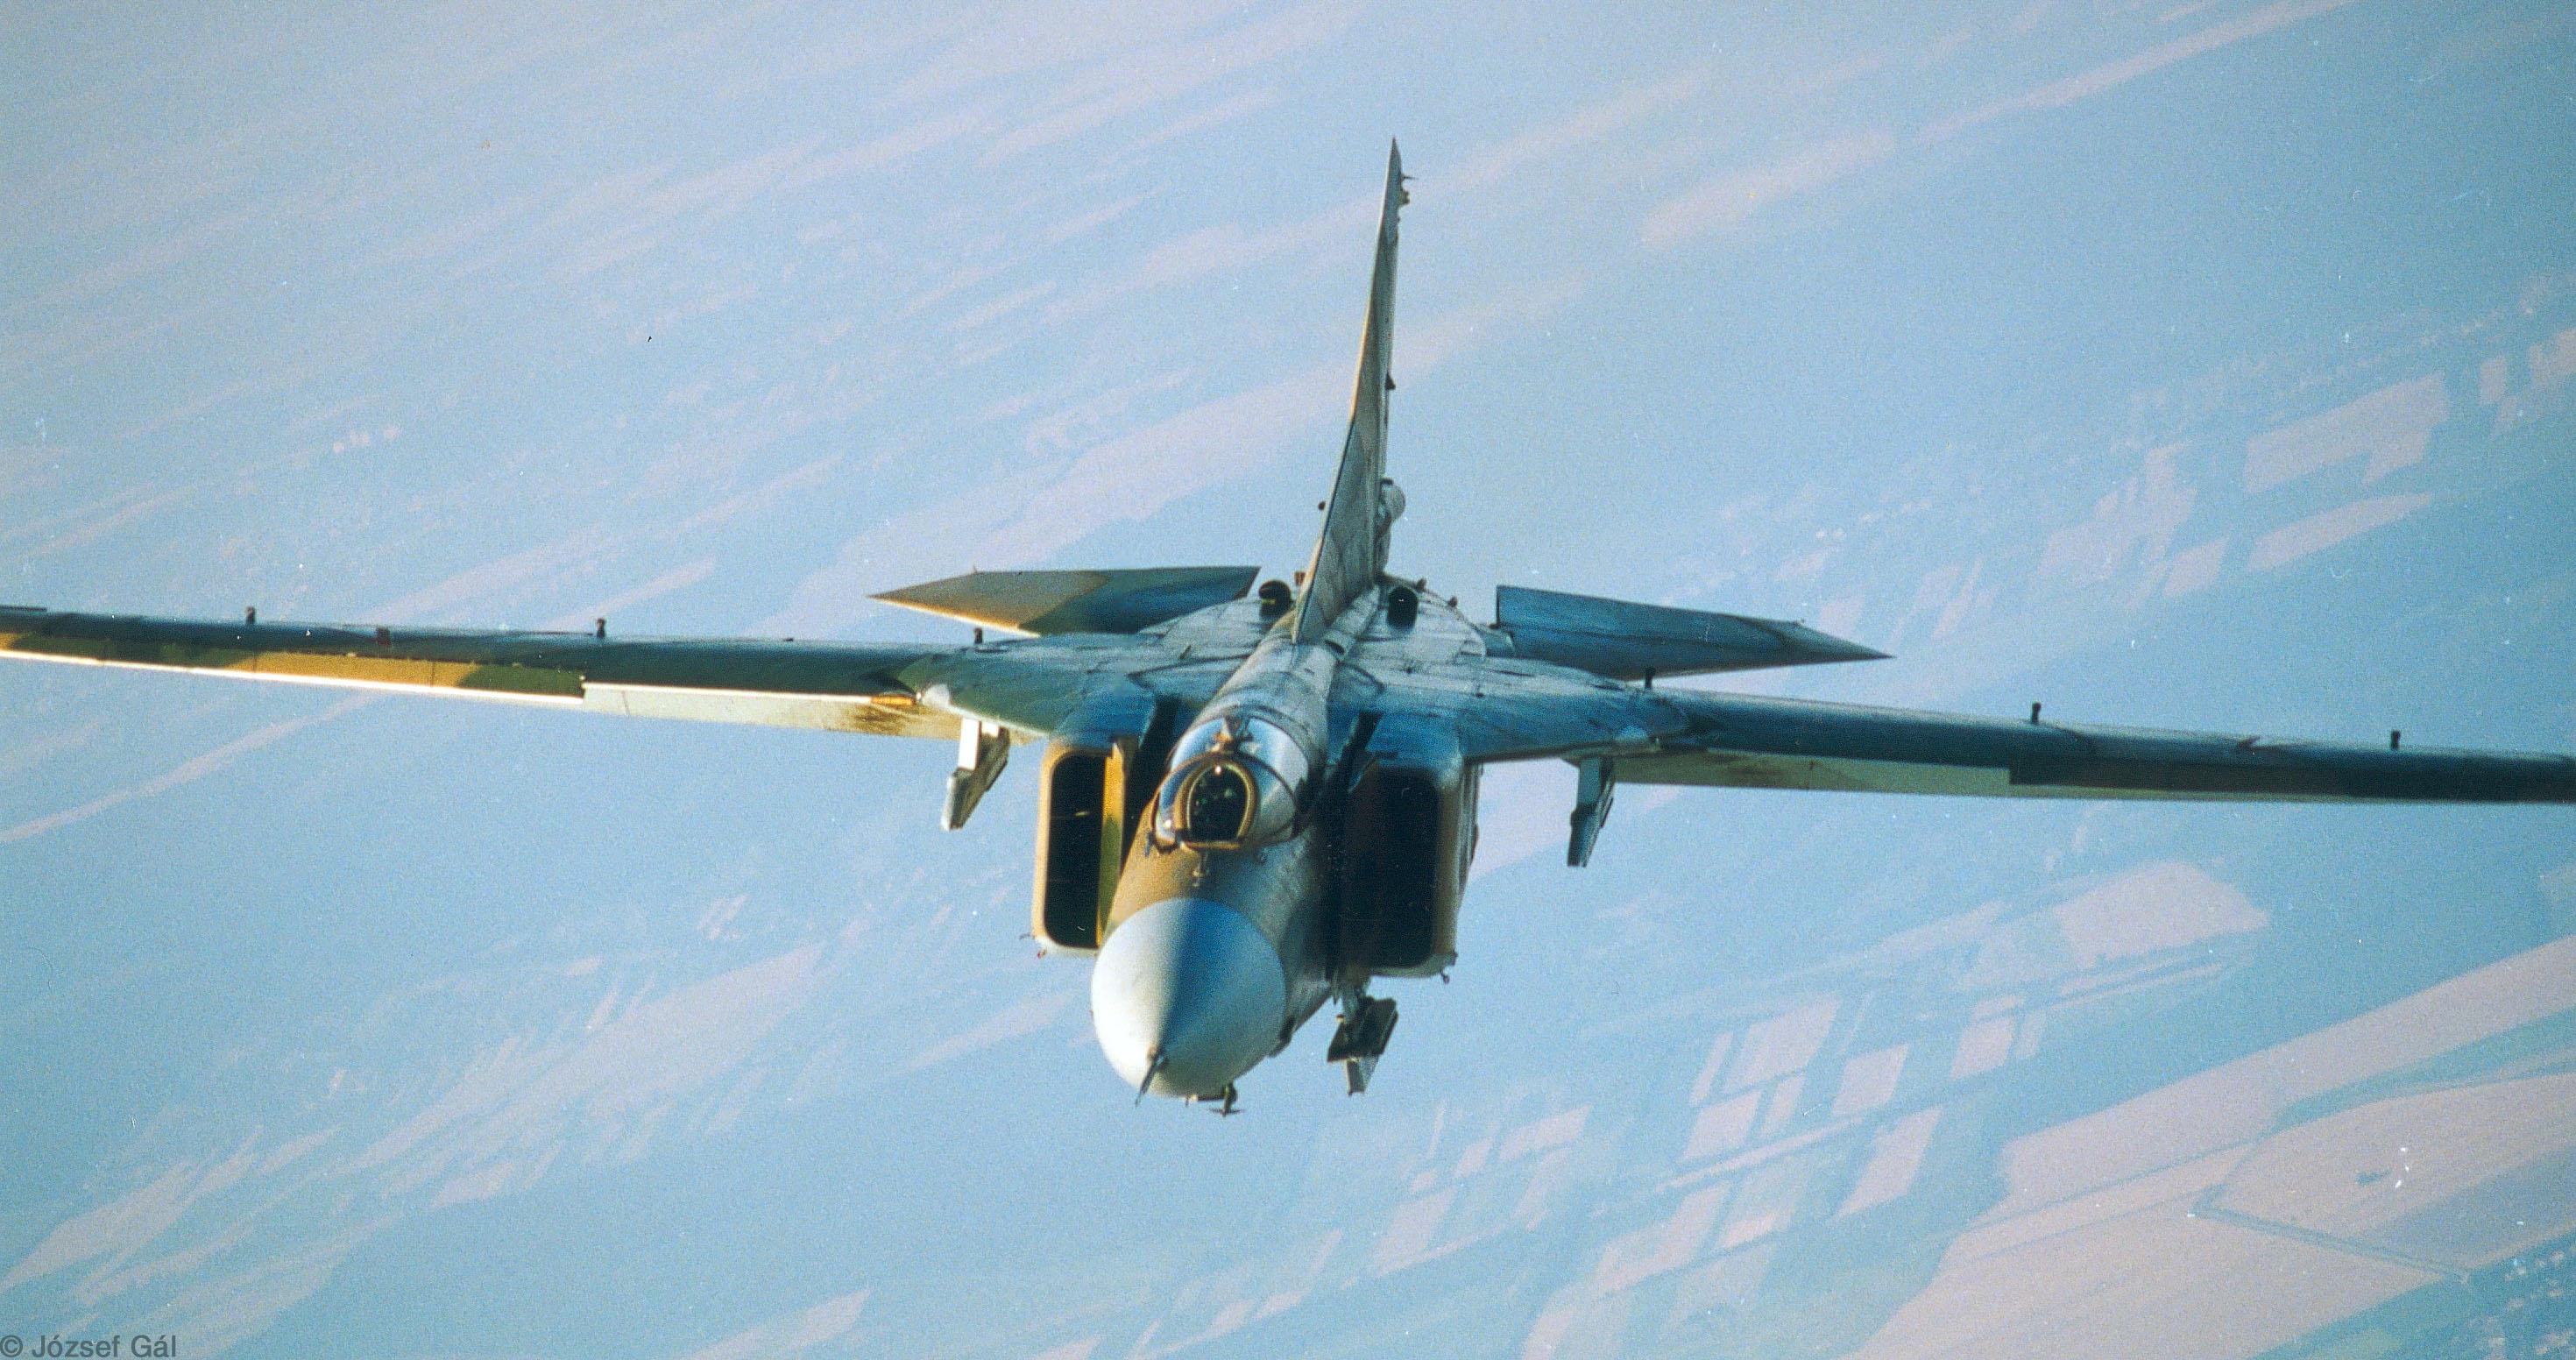 b MiG_23_in air_JG007